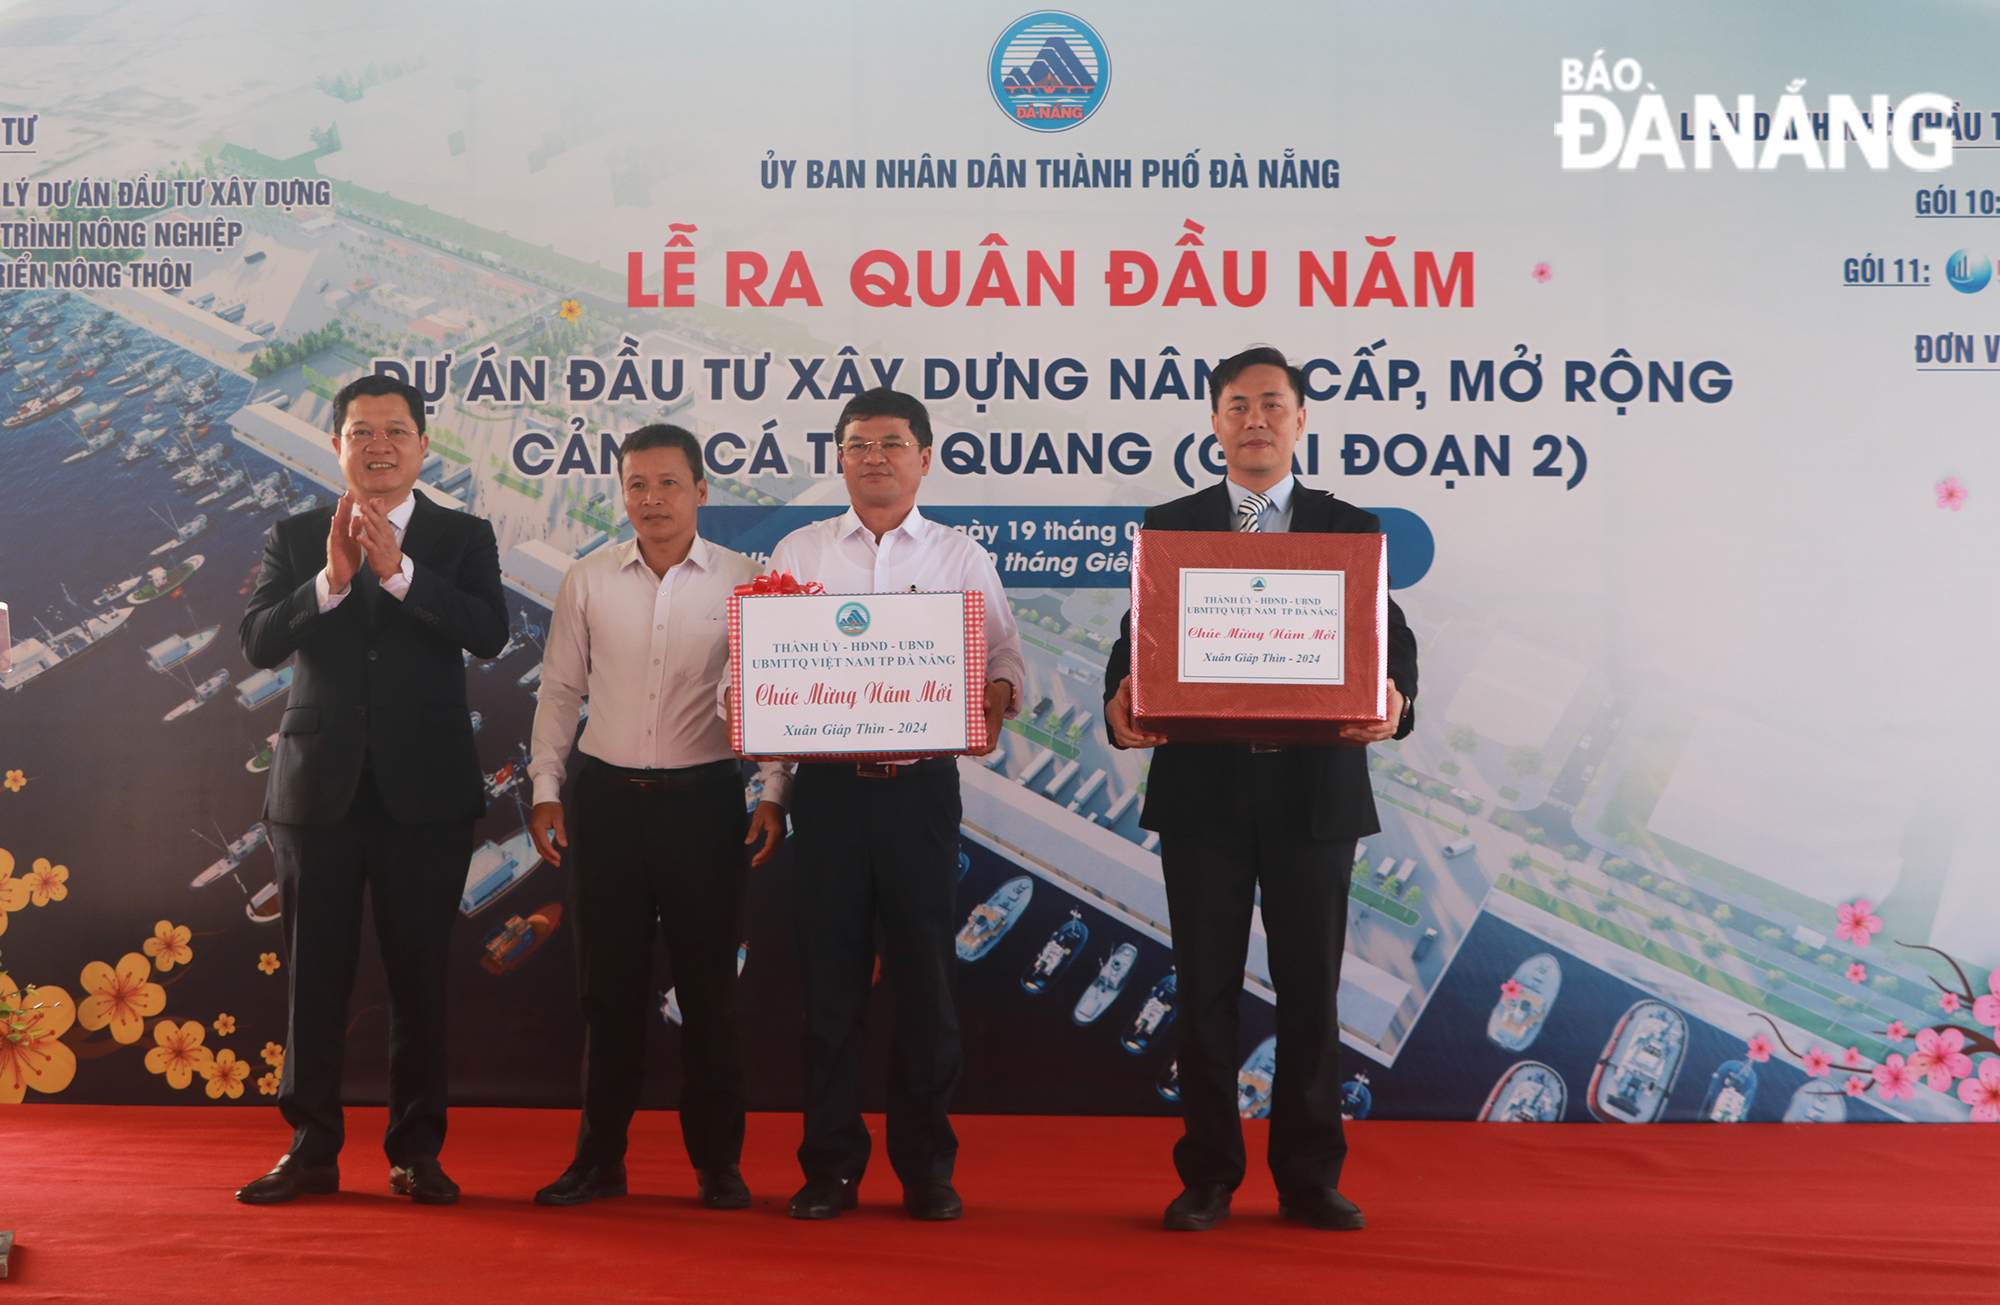 Phó Chủ tịch Thường trực, phụ trách HĐND thành phố Trần Phước Sơn (đầu tiên, bên trái) tặng quà động viên ra quân thi công tại Lễ ra quân đầu năm dự án Đầu tư xây dựng nâng cấp, mở rộng cảng cá Thọ Quang (giai đoạn 2) trong sáng 19-2. Ảnh: VĂN HOÀNG